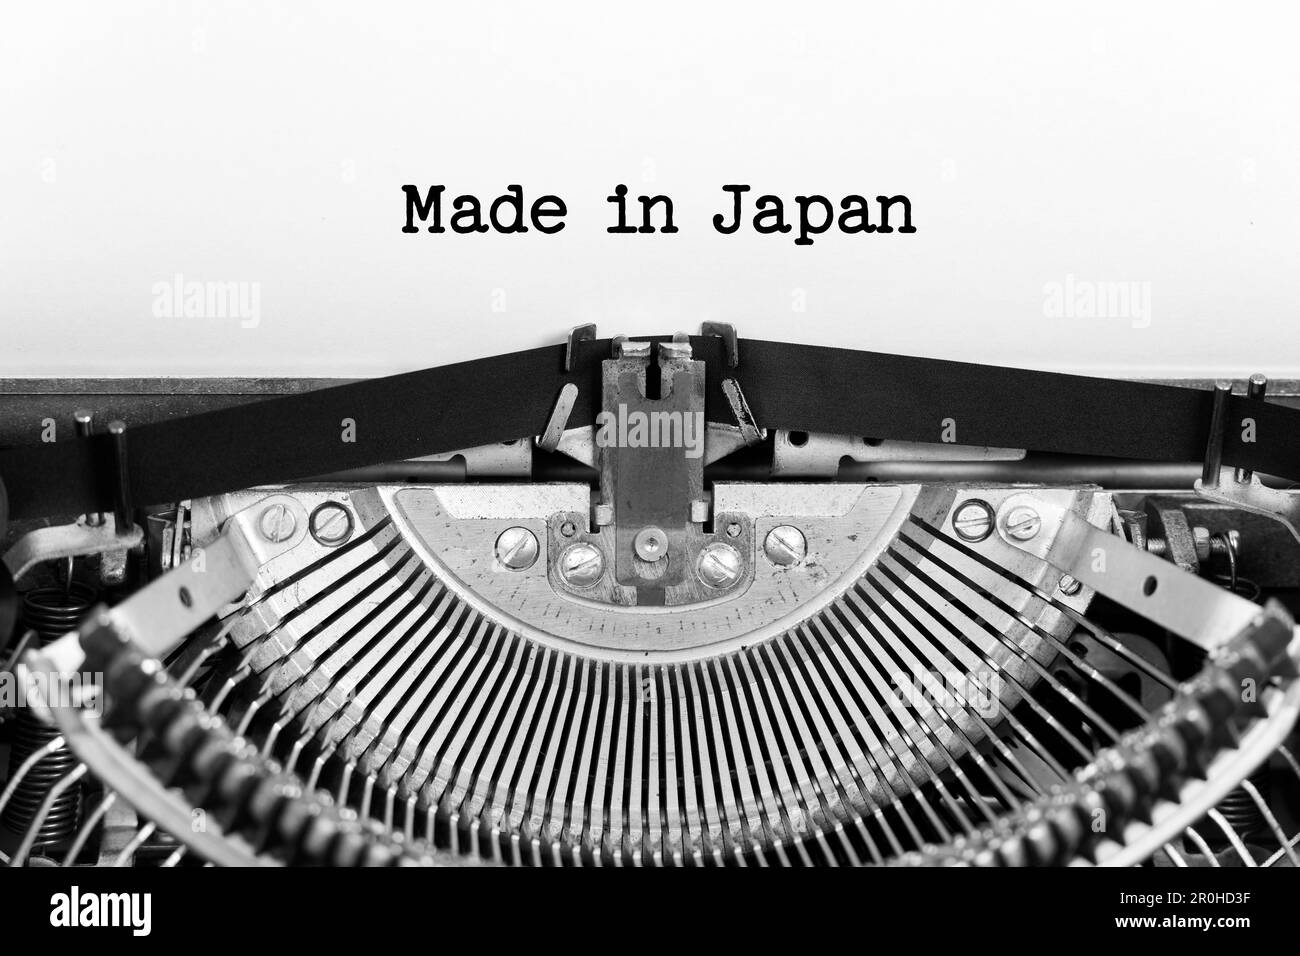 Fait au Japon phrase de fermeture étant dactylographiée et centrée sur une feuille de papier sur vieille machine à écrire vintage mécanique Banque D'Images